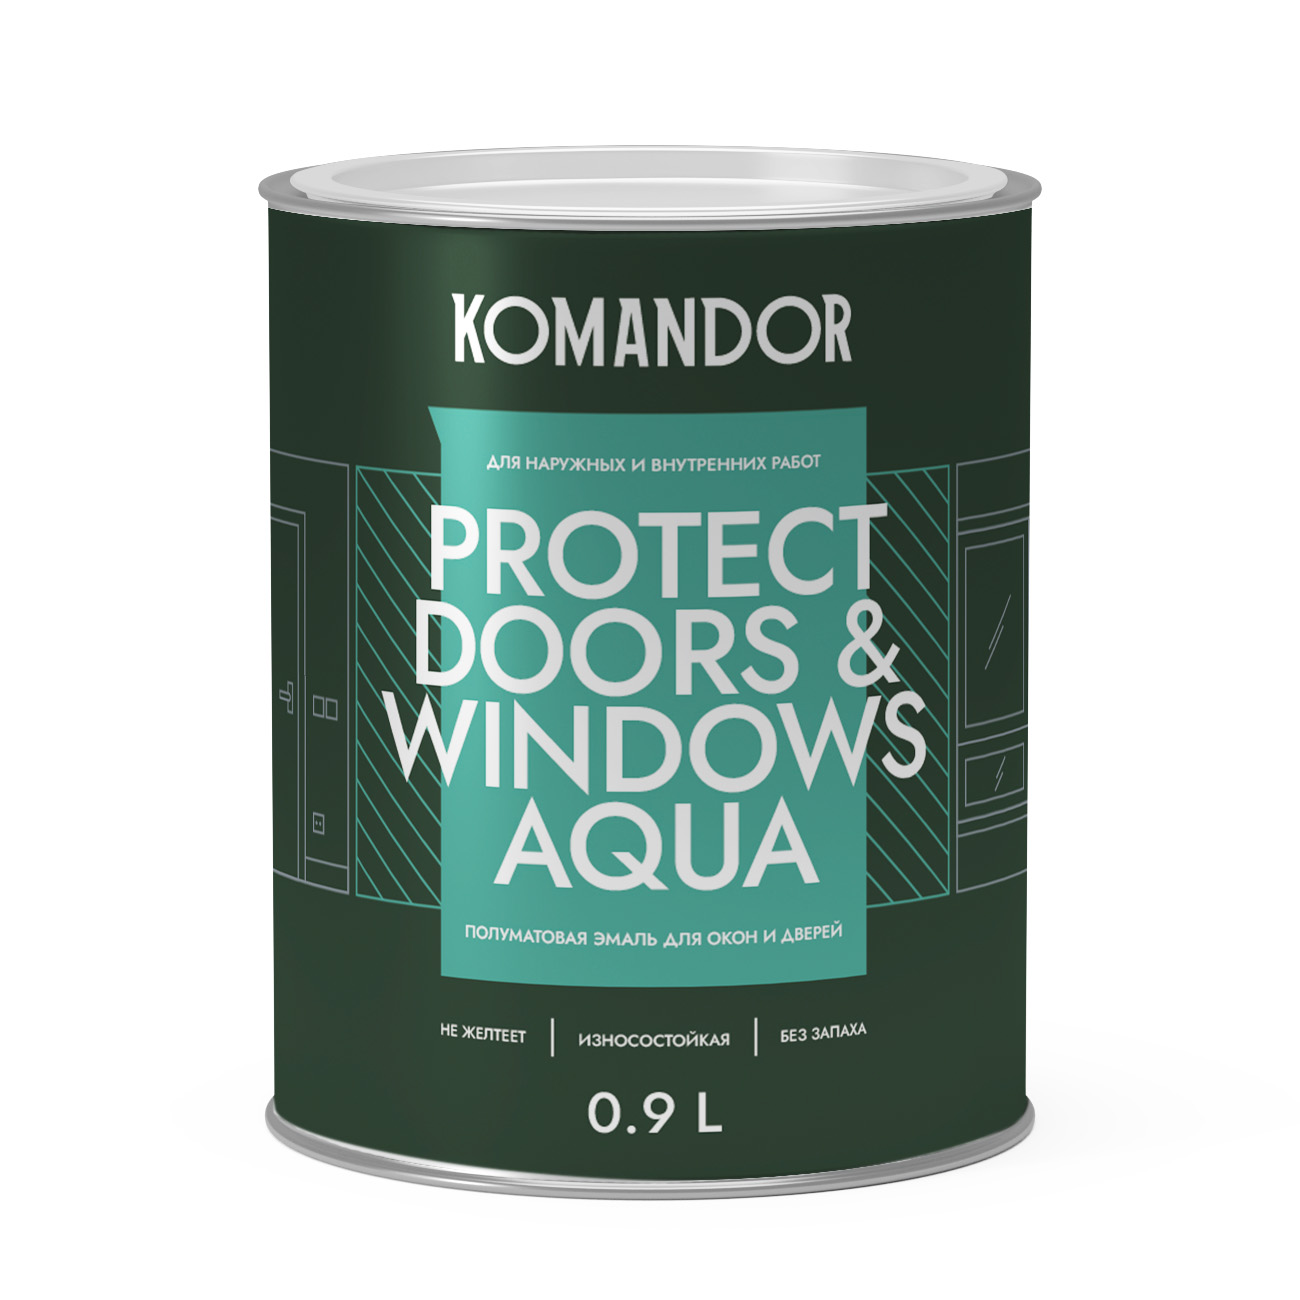 Эмаль для окон и дверей Komandor Protect Doors & Windows Aqua A S1313001001 полуматовая 0,9 л